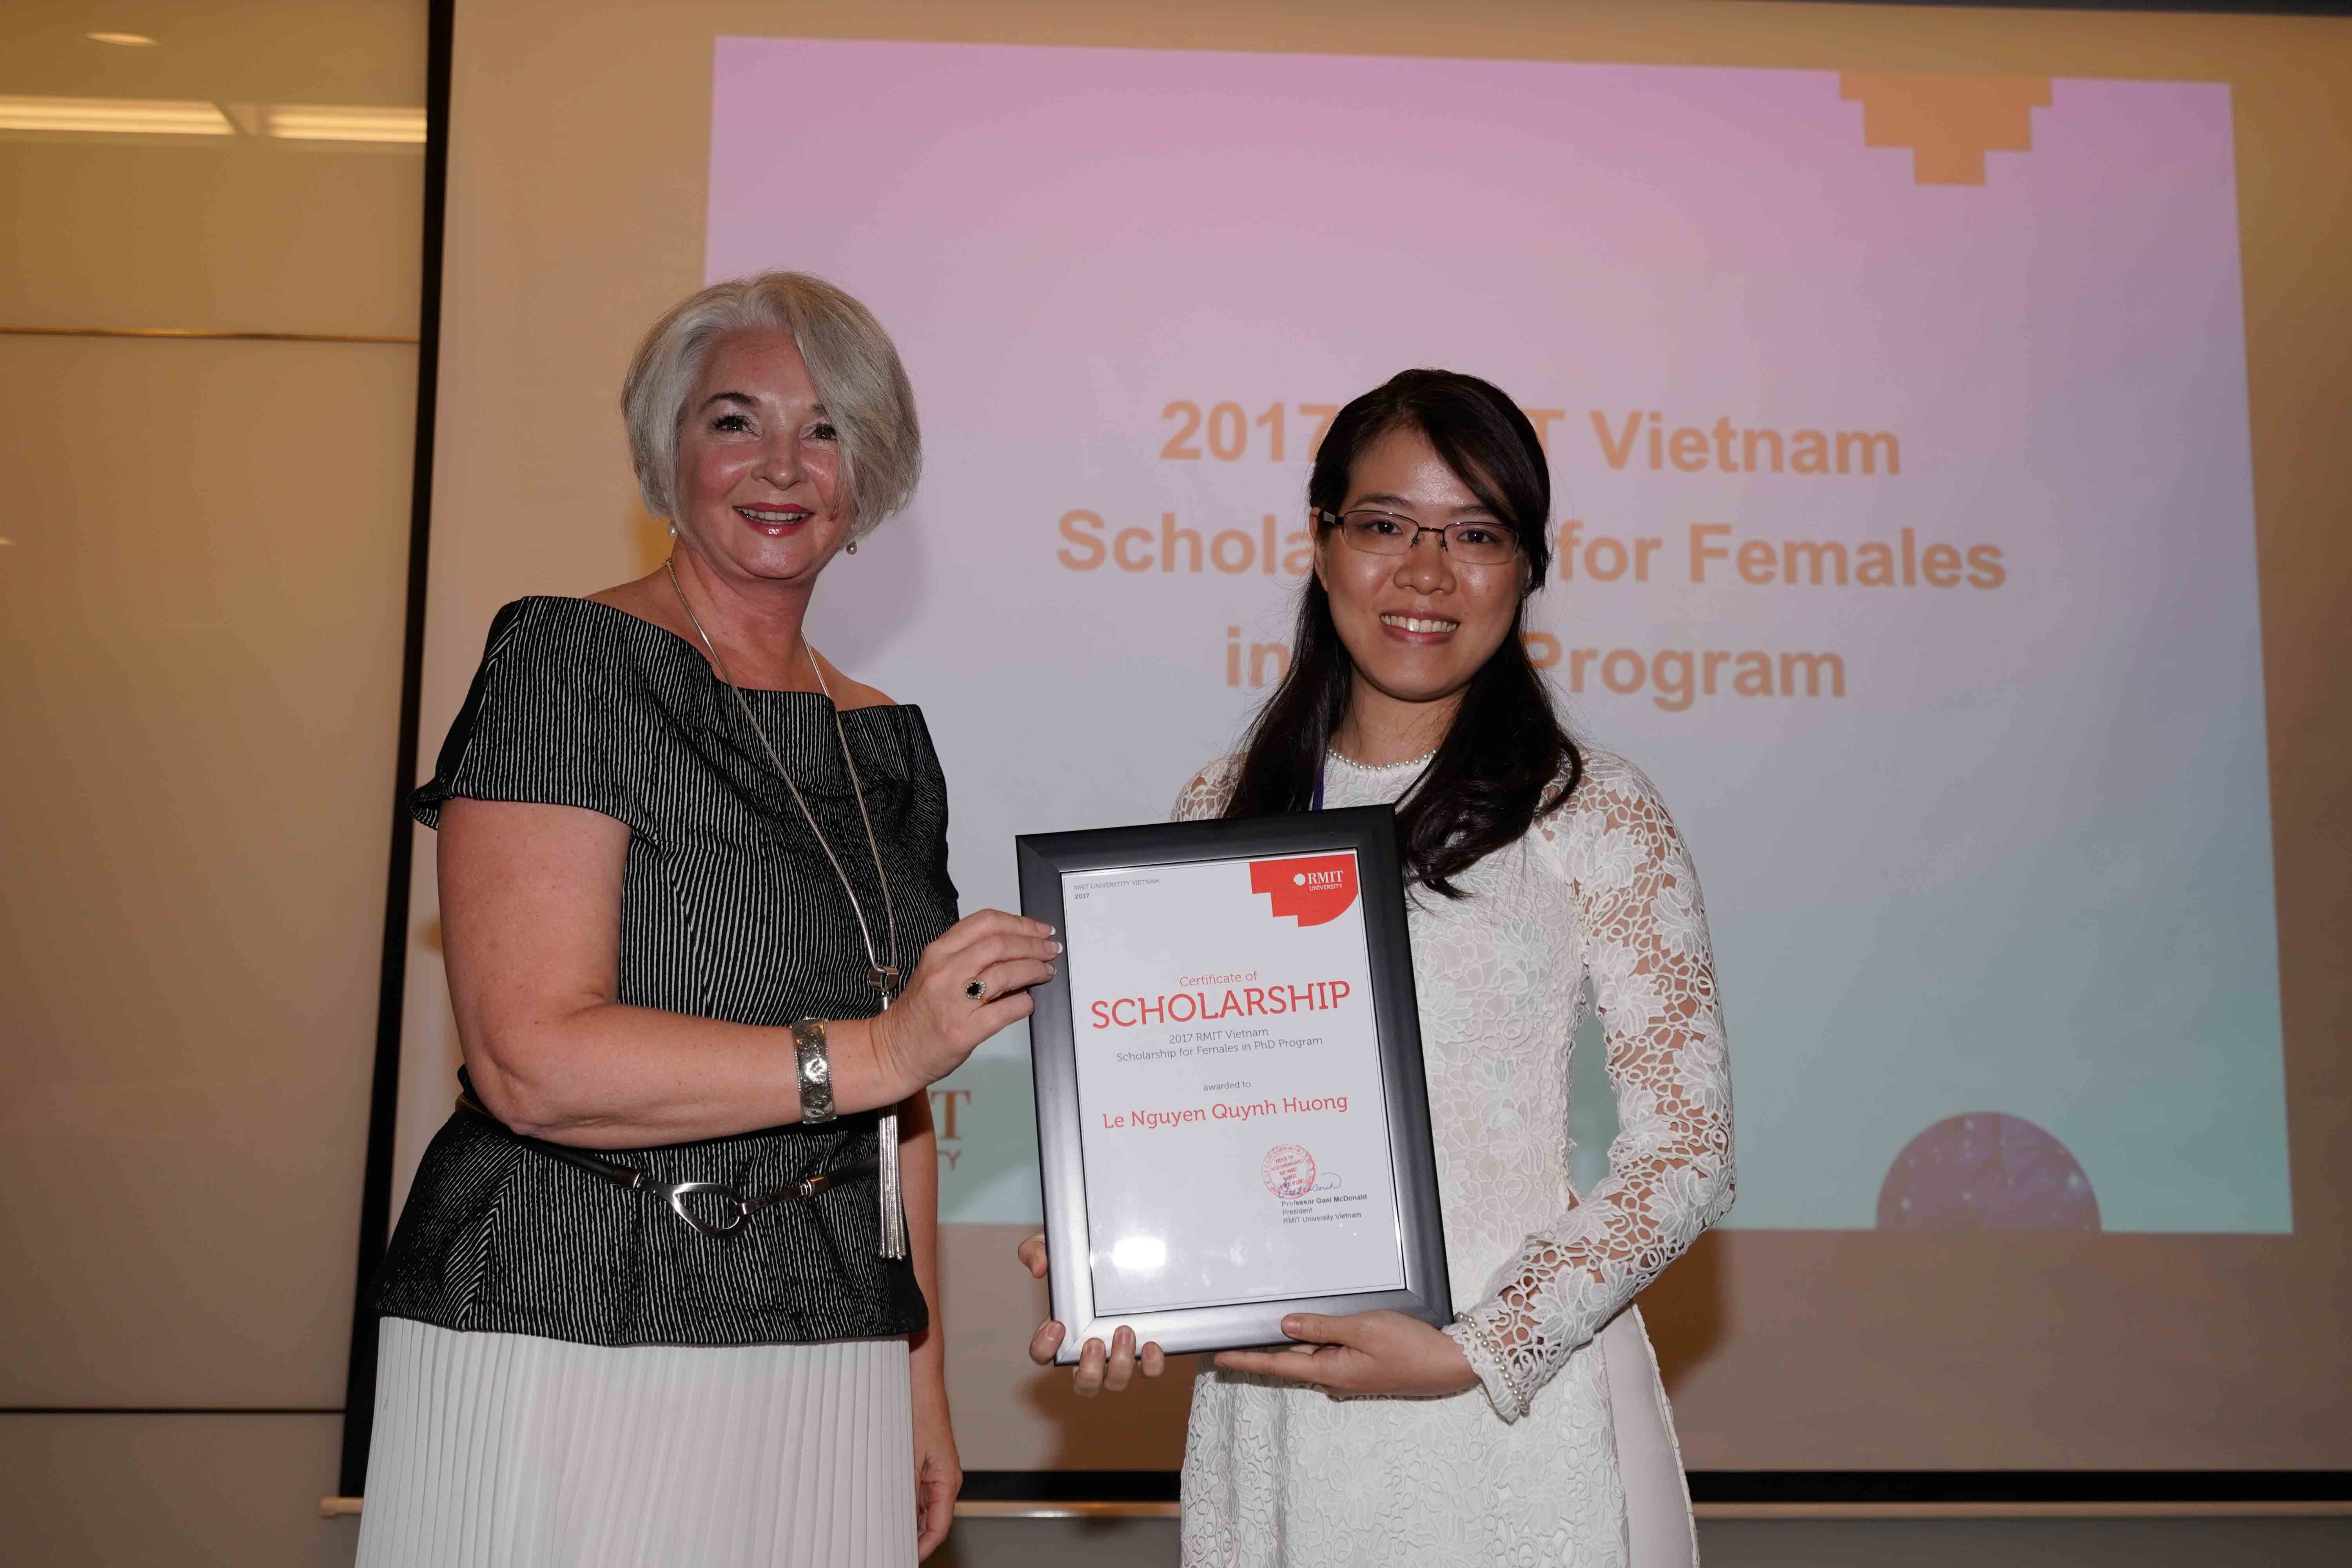 Giáo sư McDonald, Hiệu trưởng Đại học RMIT Việt Nam, trao học bổng chương trình Tiến sĩ cho cô Lê Nguyễn Quỳnh Hương.